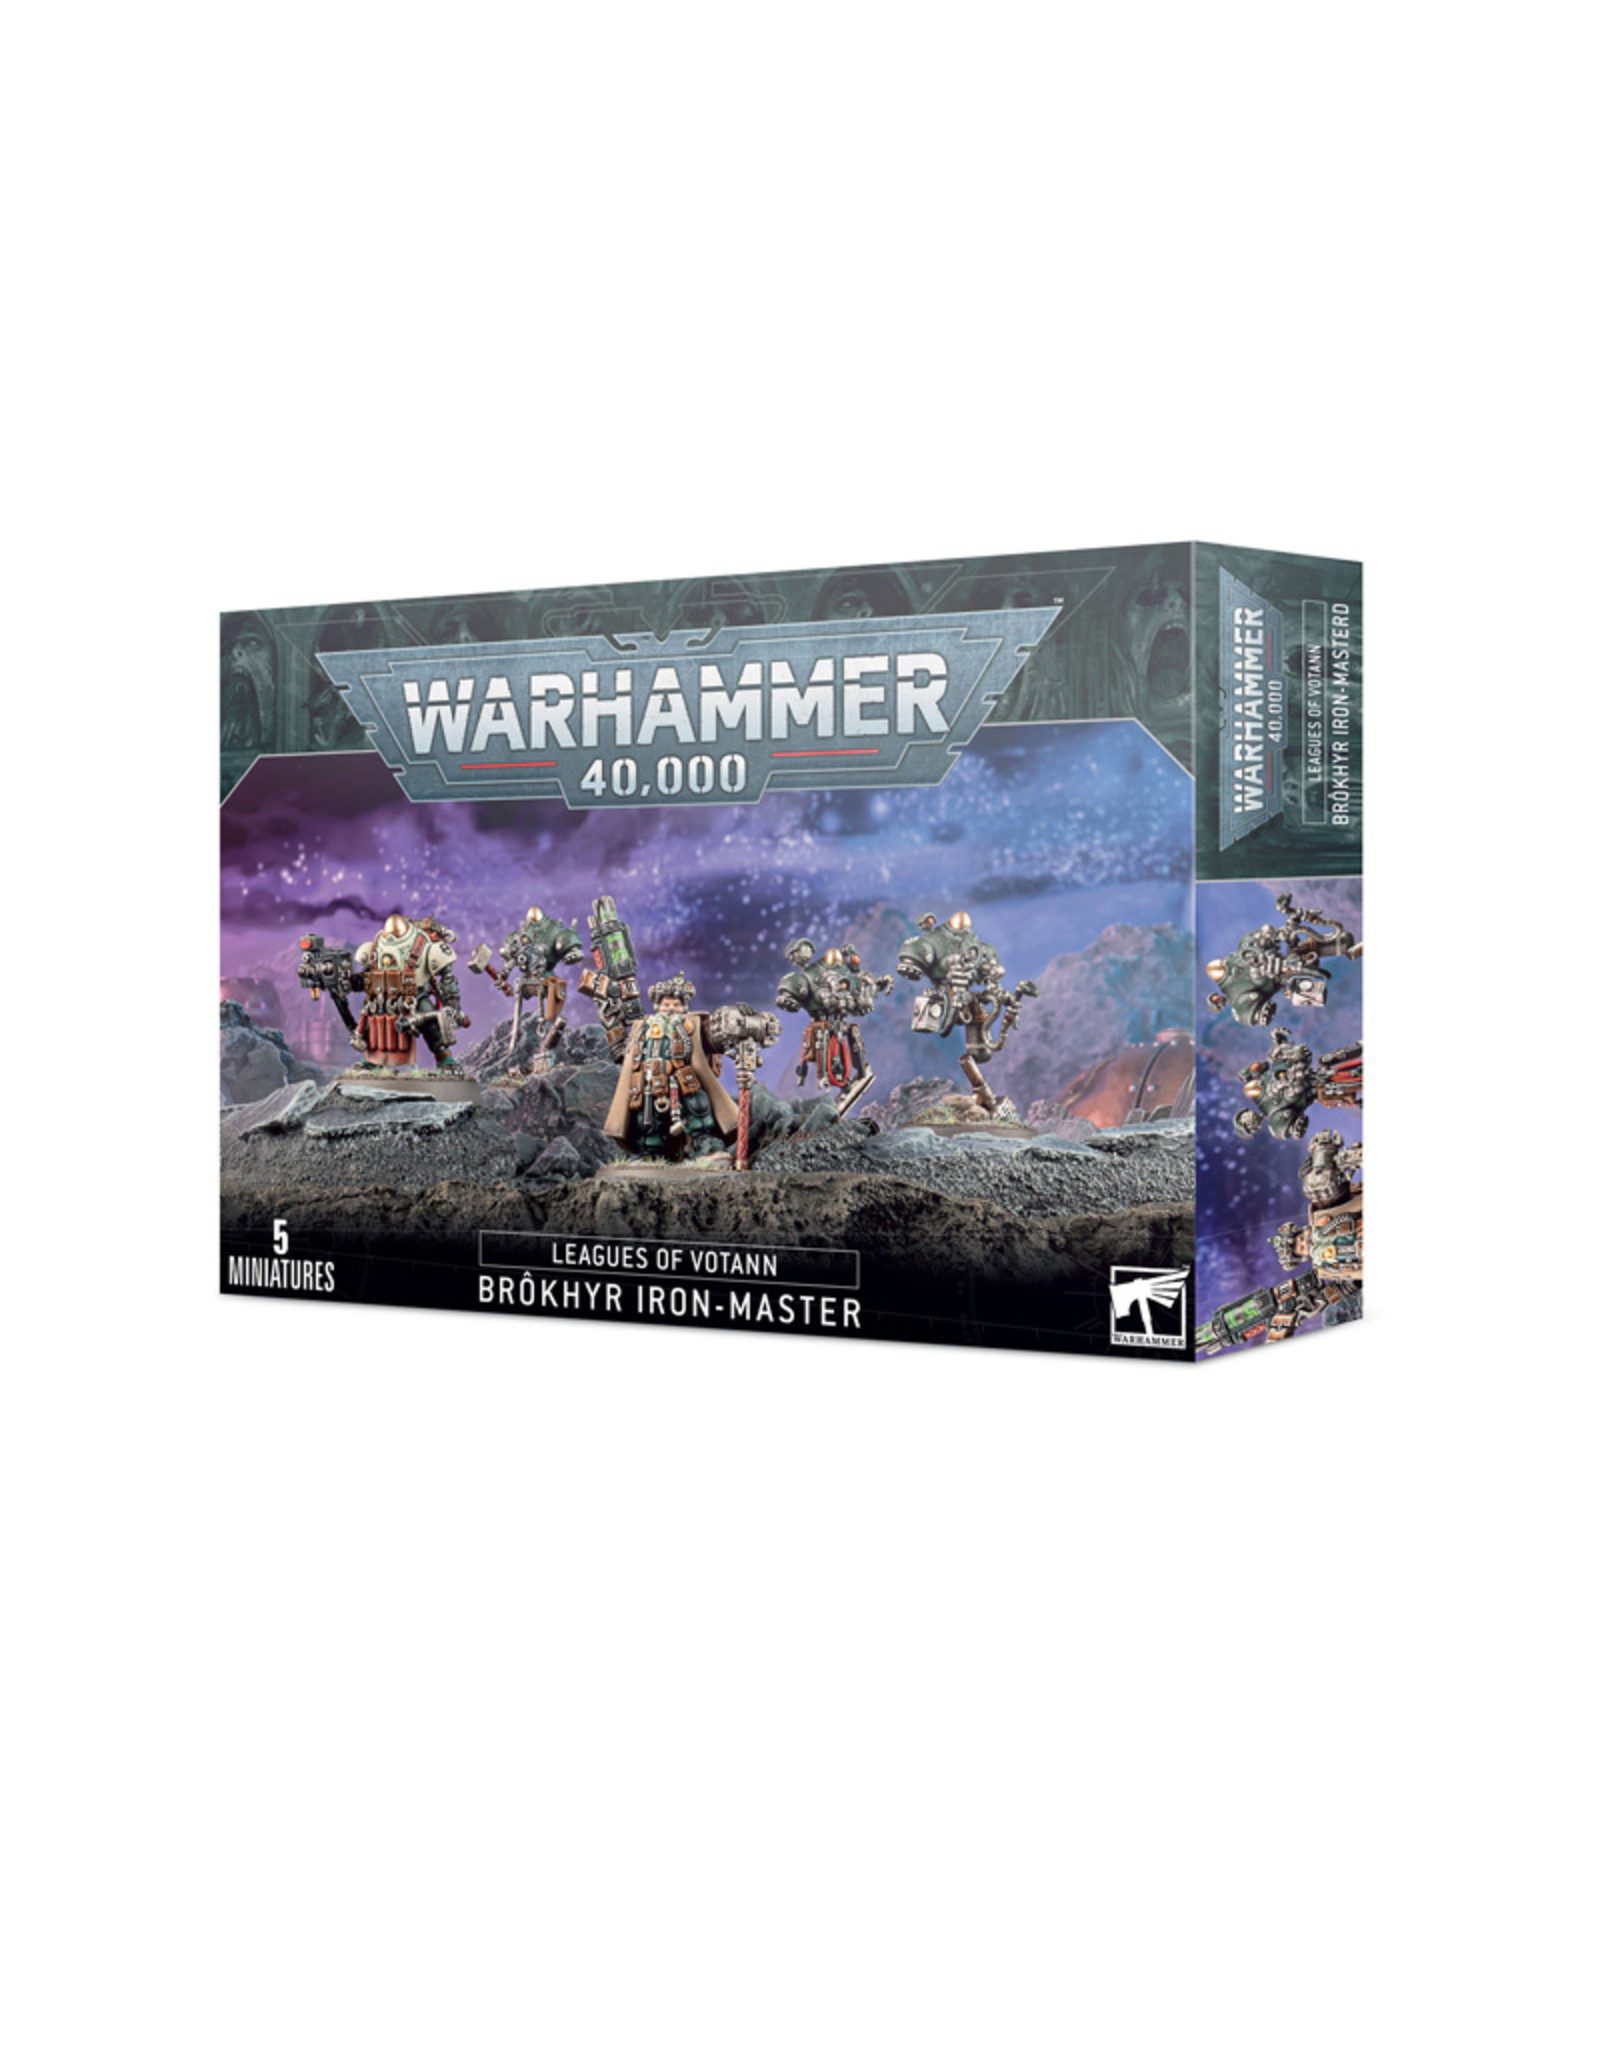 Games Workshop Warhammer 40,000 Leagues of Votann Brokhyr Iron-Master